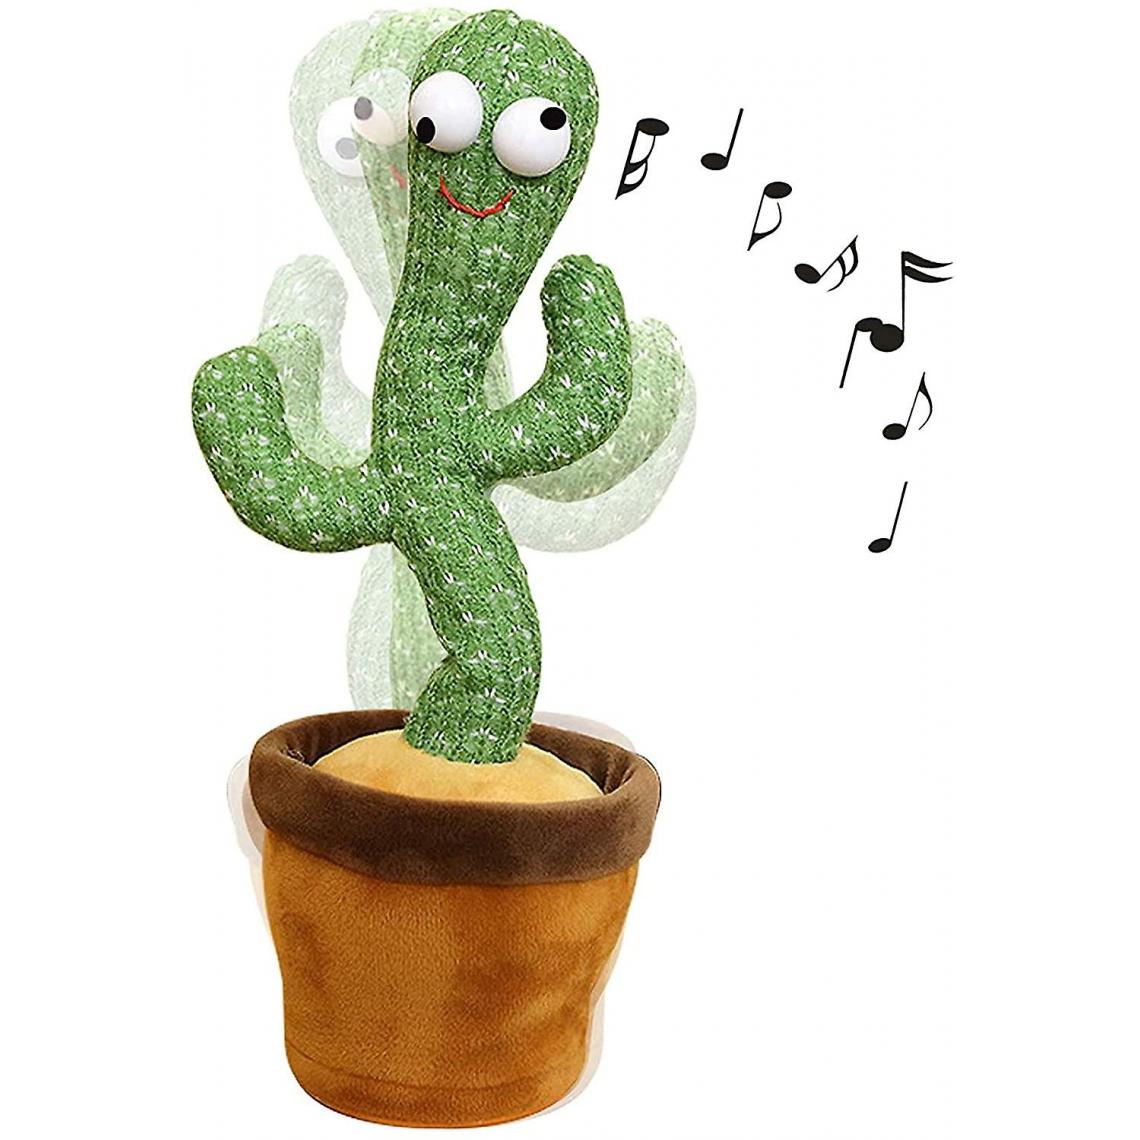 Universal - Chant et dansant Cactus Toys, Cactus Peluche pour les enfants(Vert) - Doudous